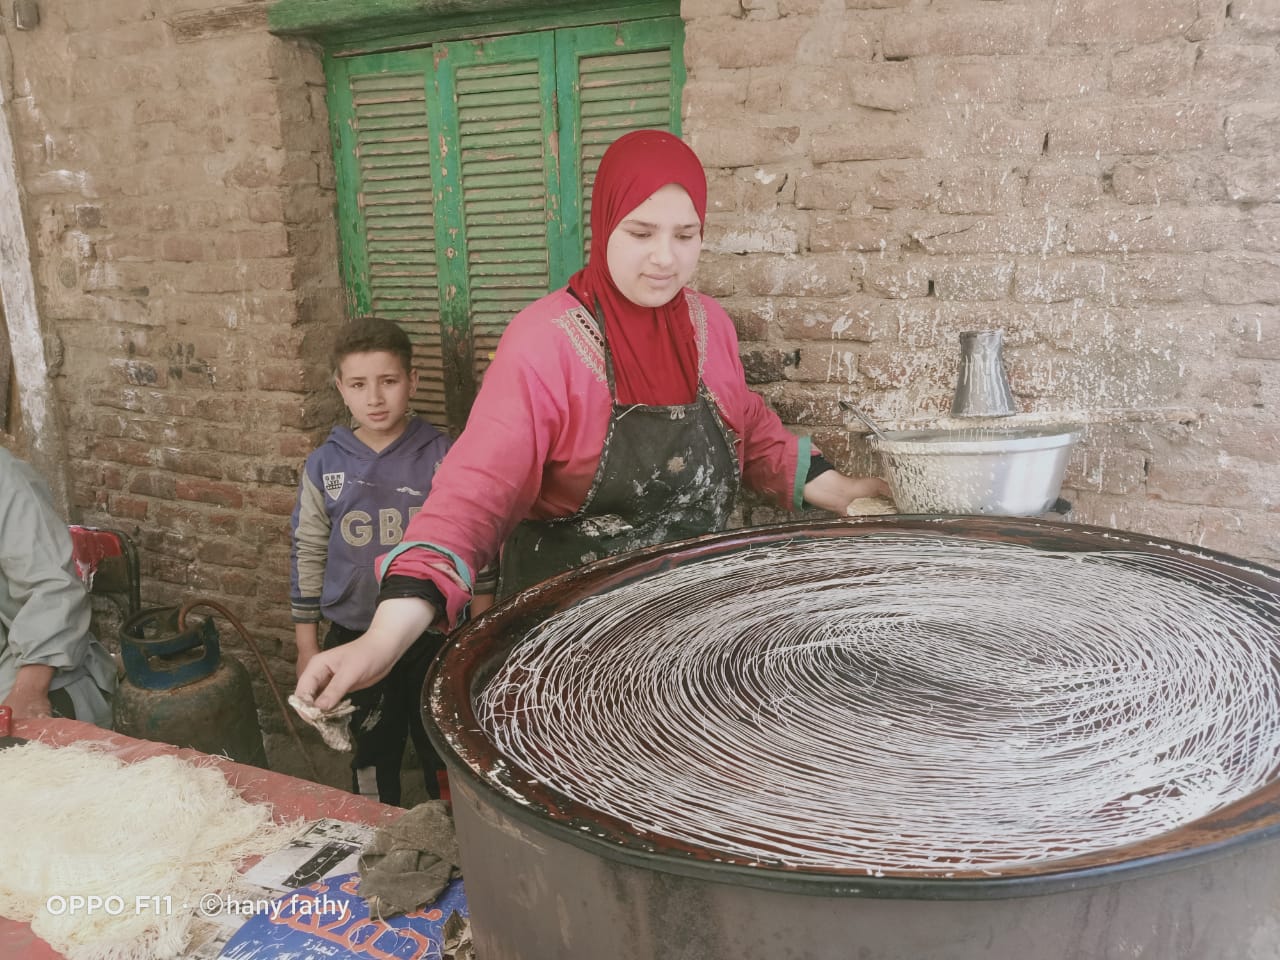  نادية أيمن فتاة تعمل فى صناعة الكنافة البلدى (8)